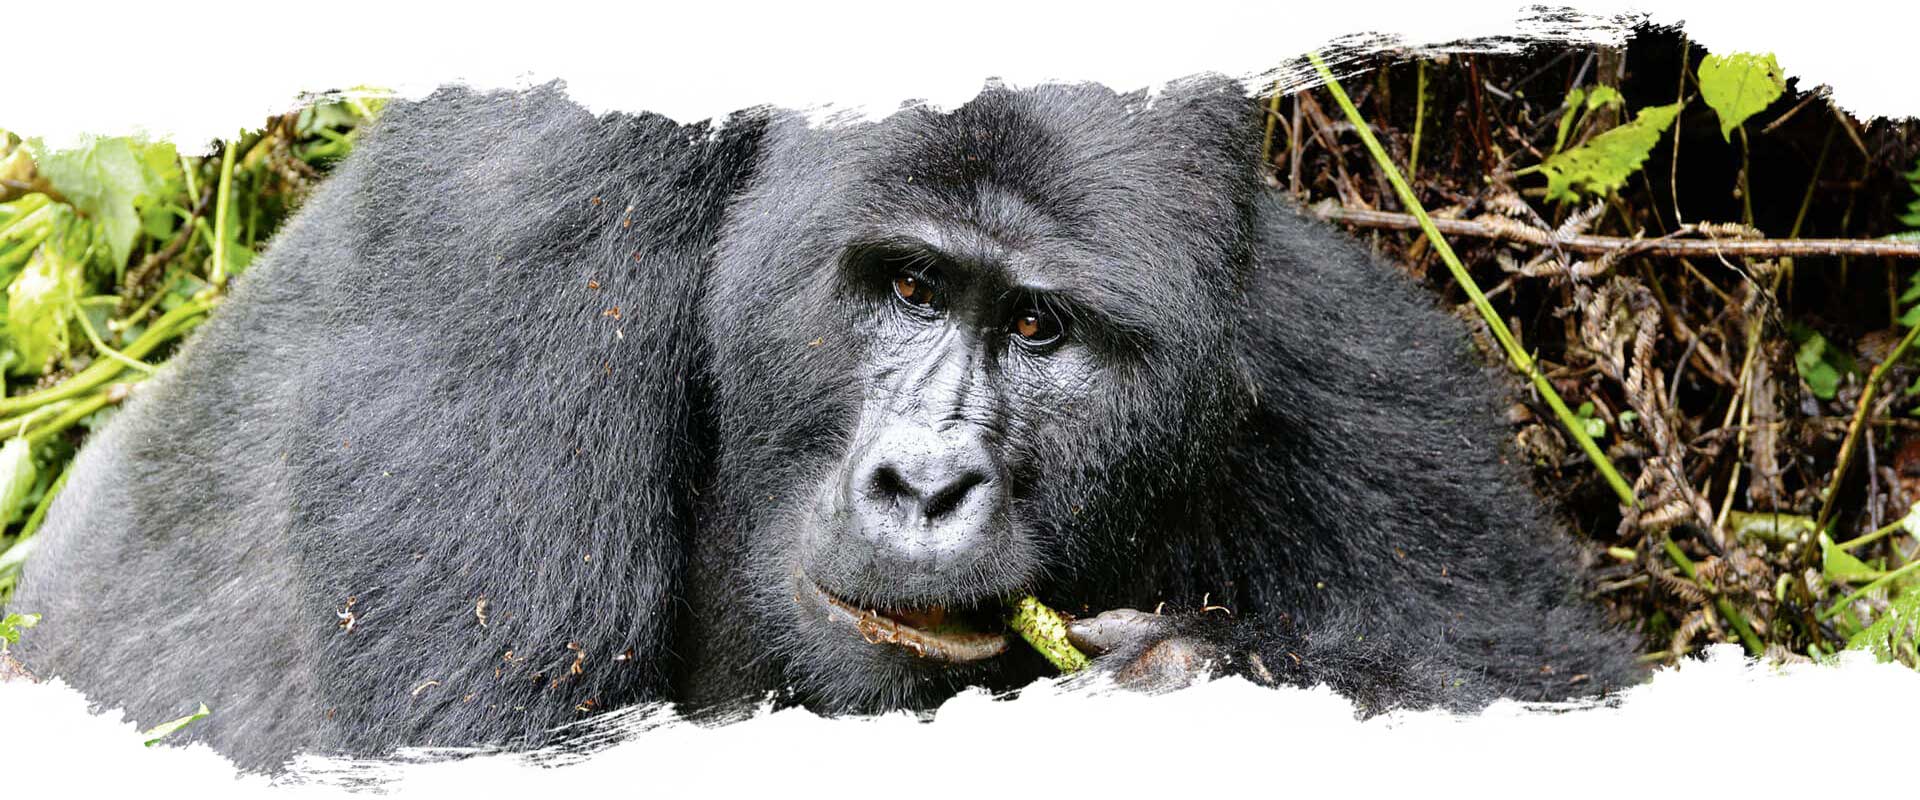 Gorillasafari - Uganda